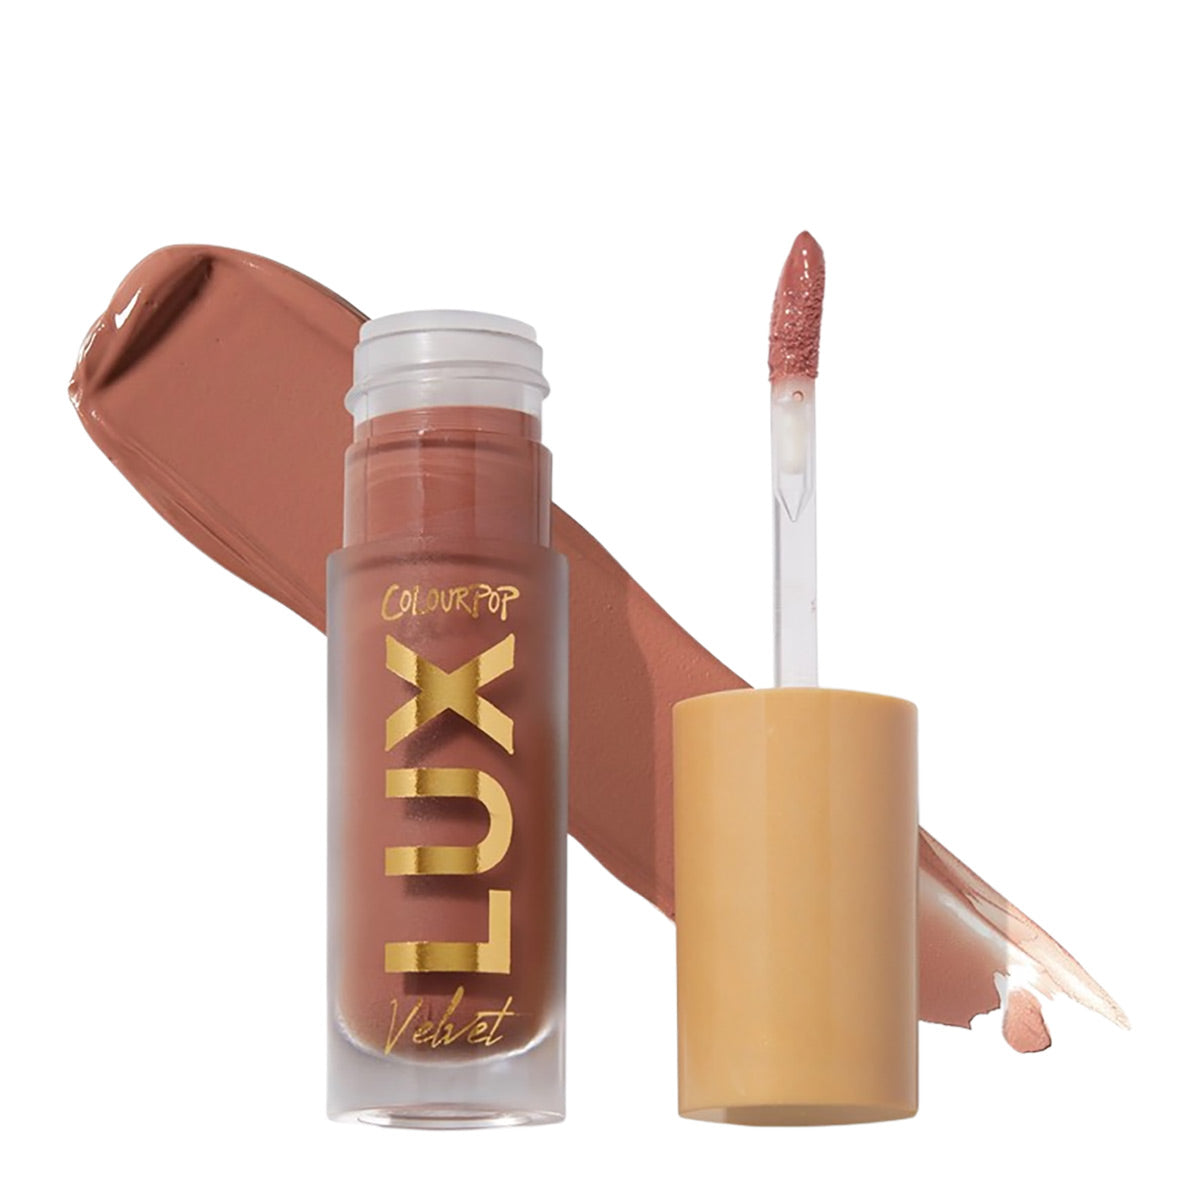 ColourPop Lux Velvet Liquid Lipstick | Ingenue